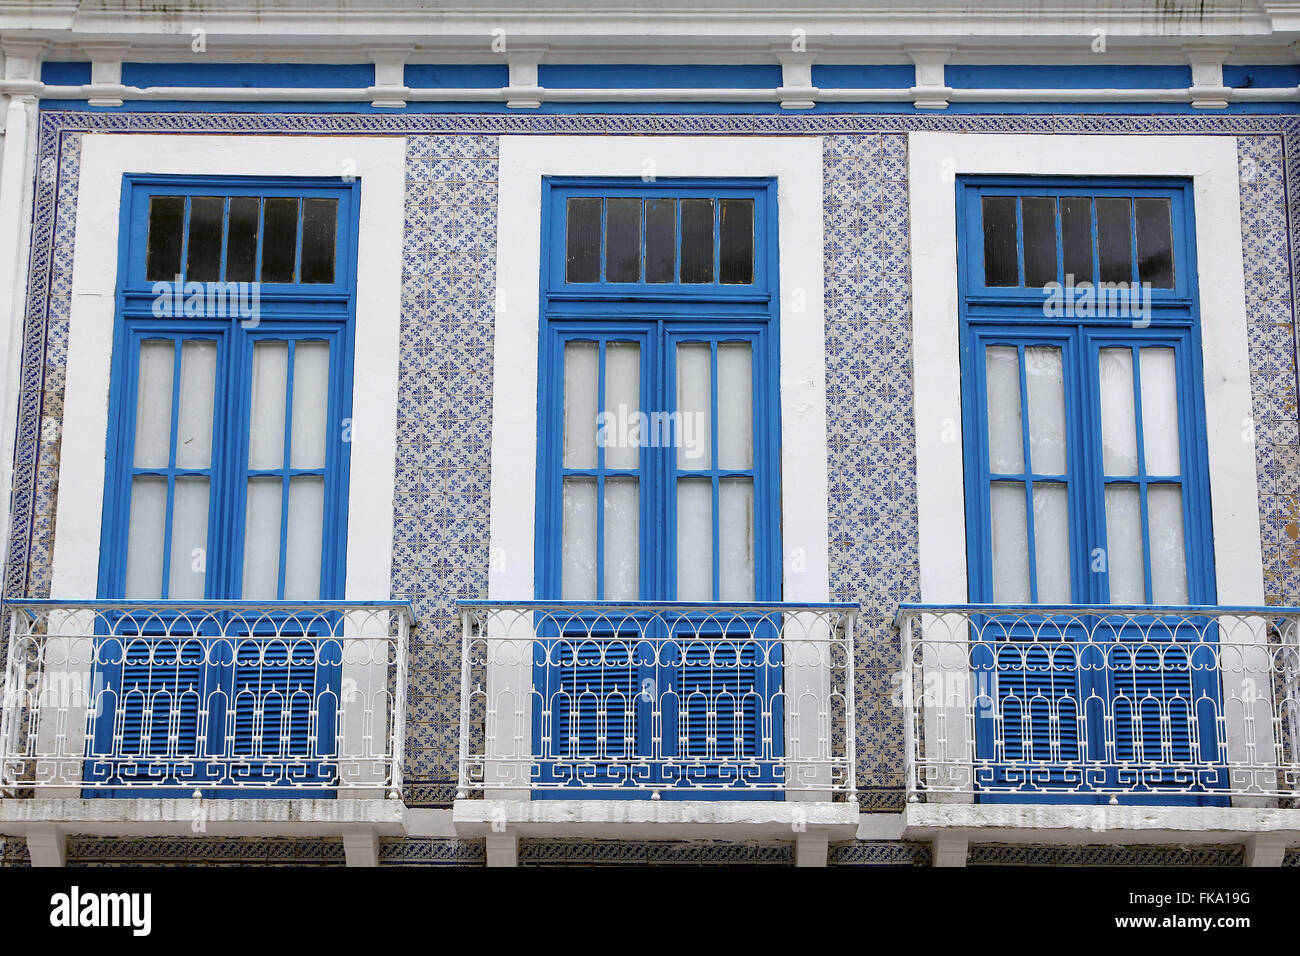 Detalle de la fachada de la casa colonial decorada con azulejos portugueses Foto de stock